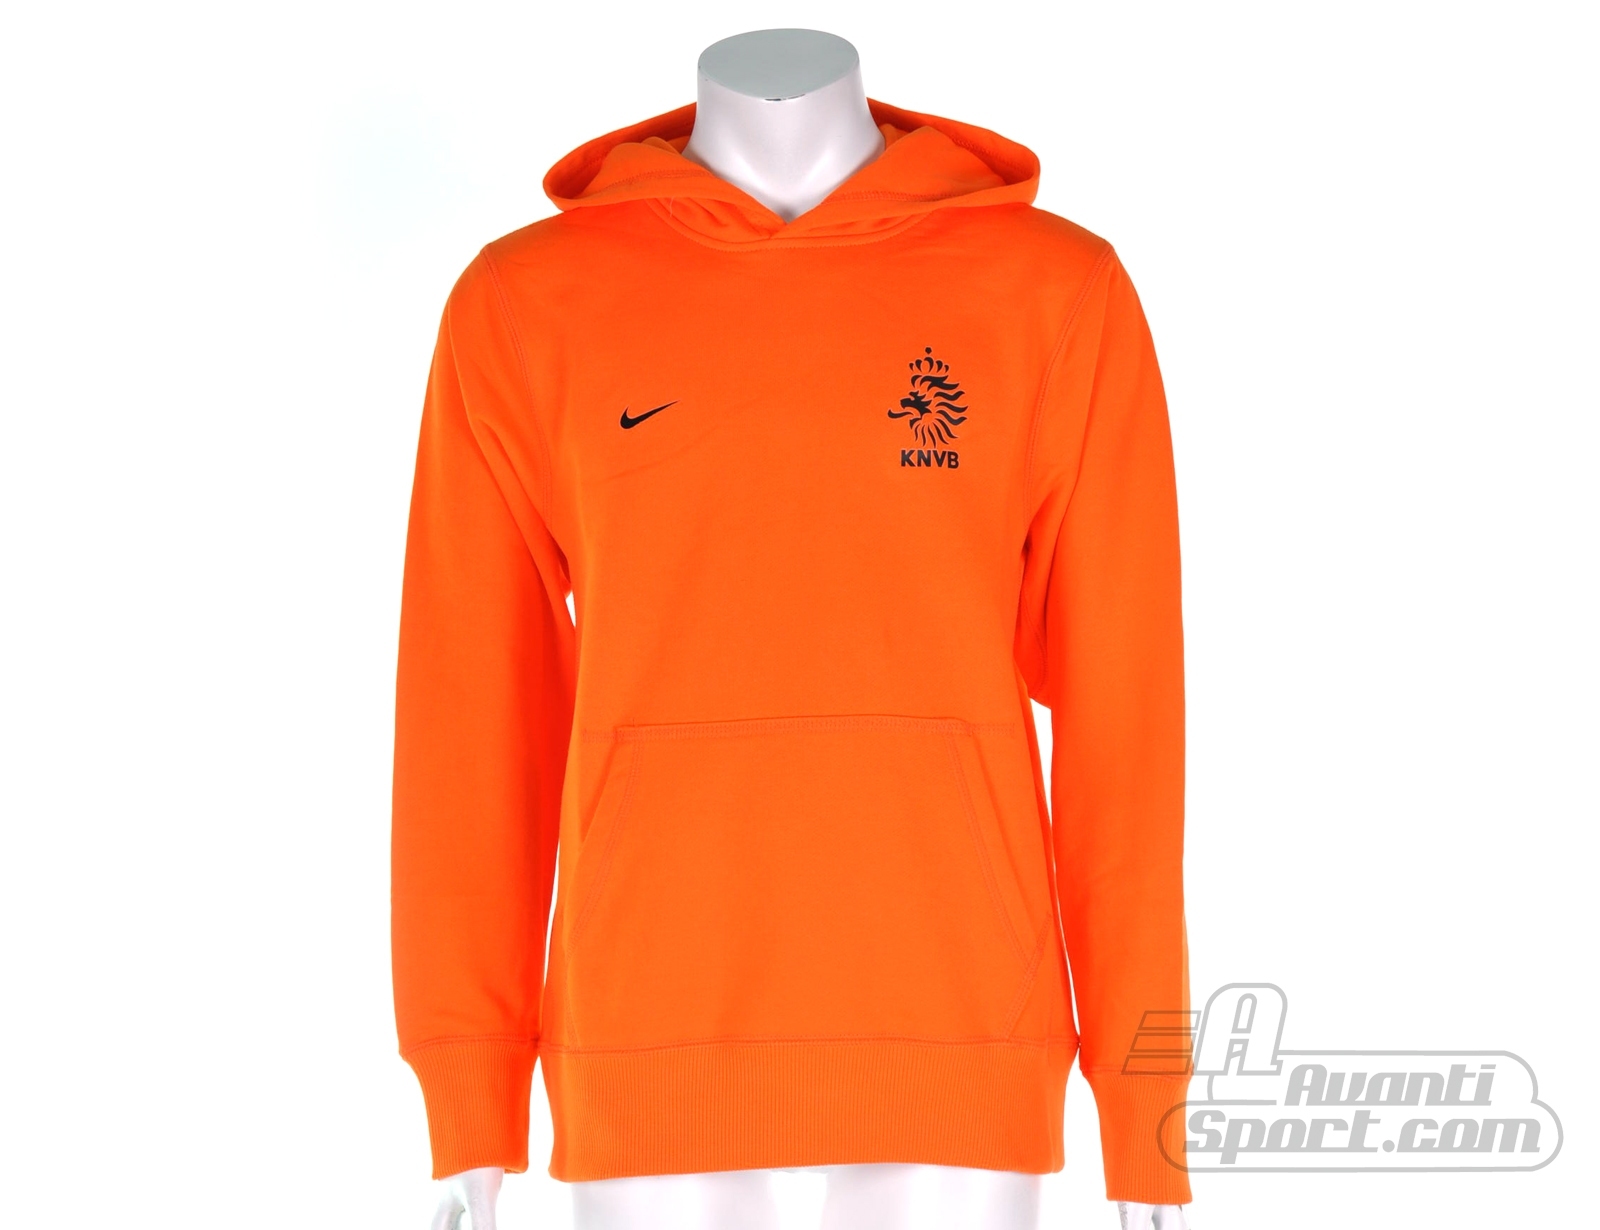 Avantisport - Nike - Dutch Boys Core Hoody - Nike Kindersweater